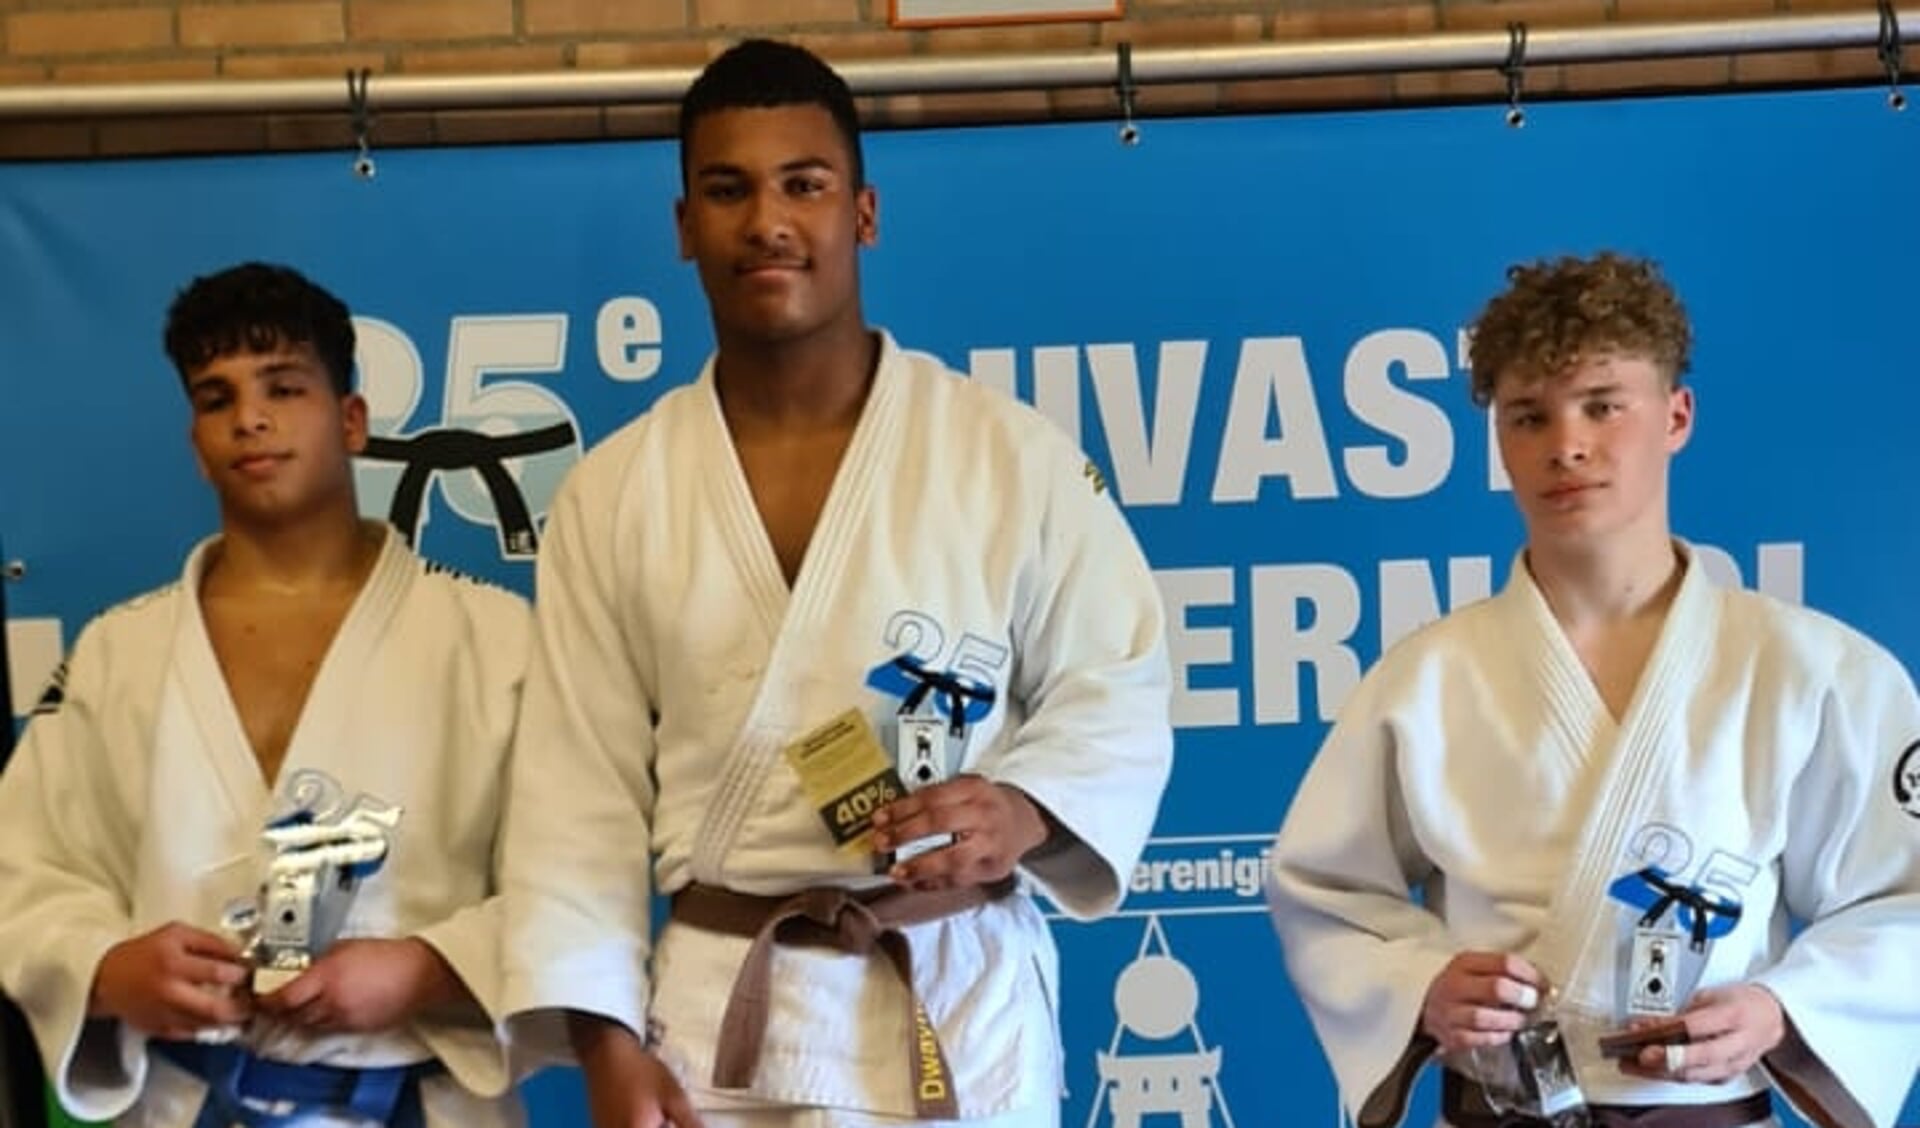 De judoka's  Thomas de Jong, Dwayne Korevaar en Milan Huijser schopten het ver tijdens het Houvast-toernooi in Mierlo.